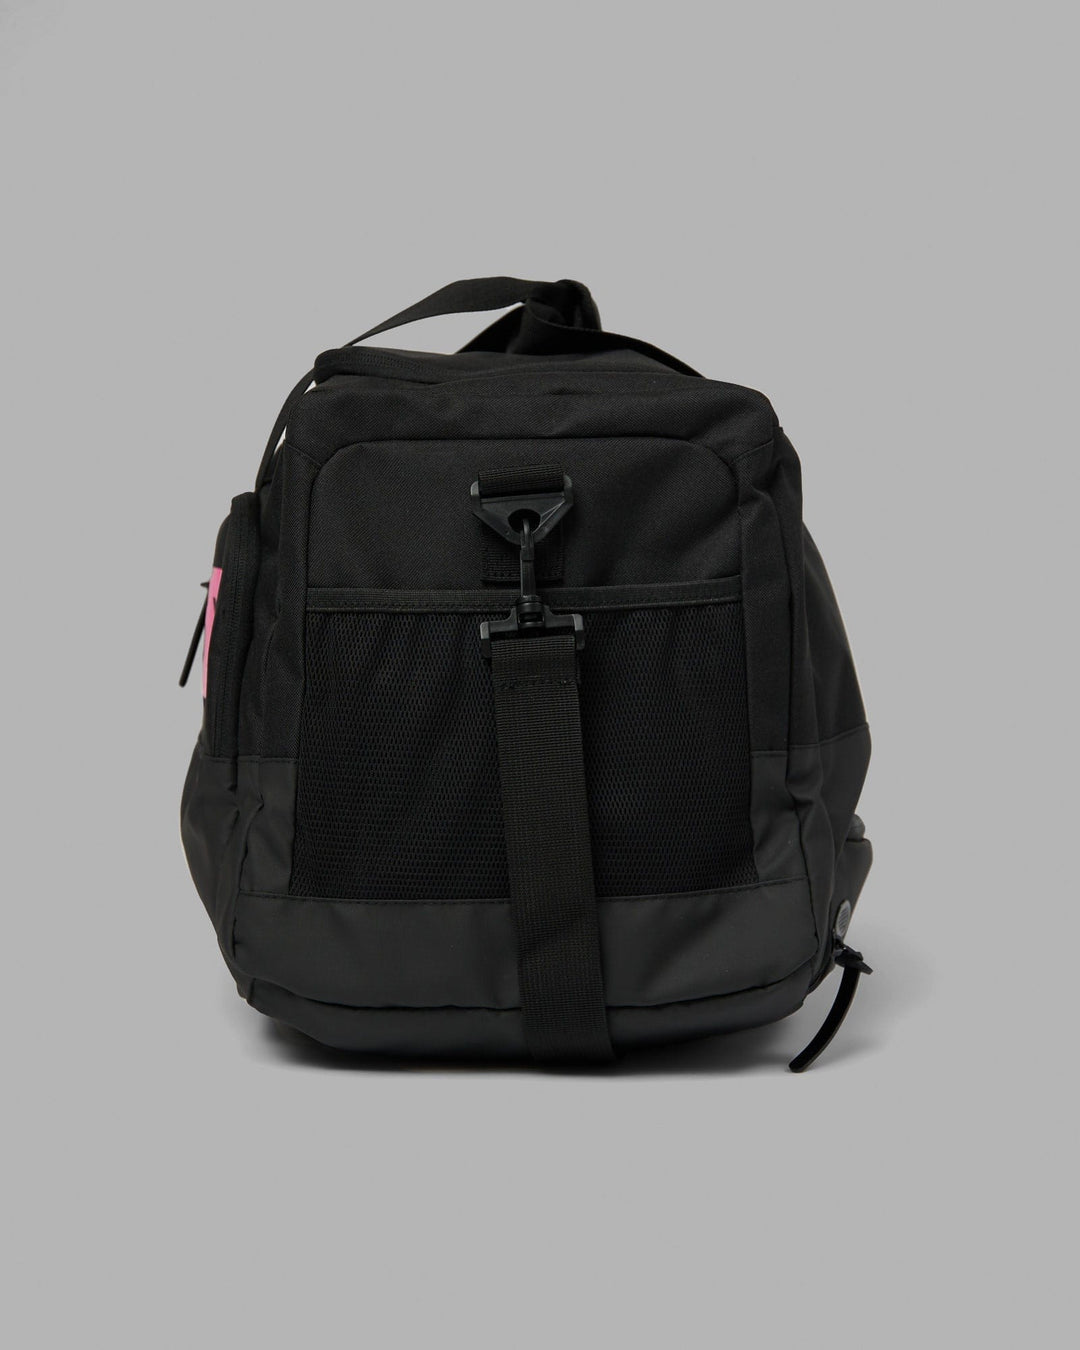 Rep Duffle Bag 50L - Black-Flamingo